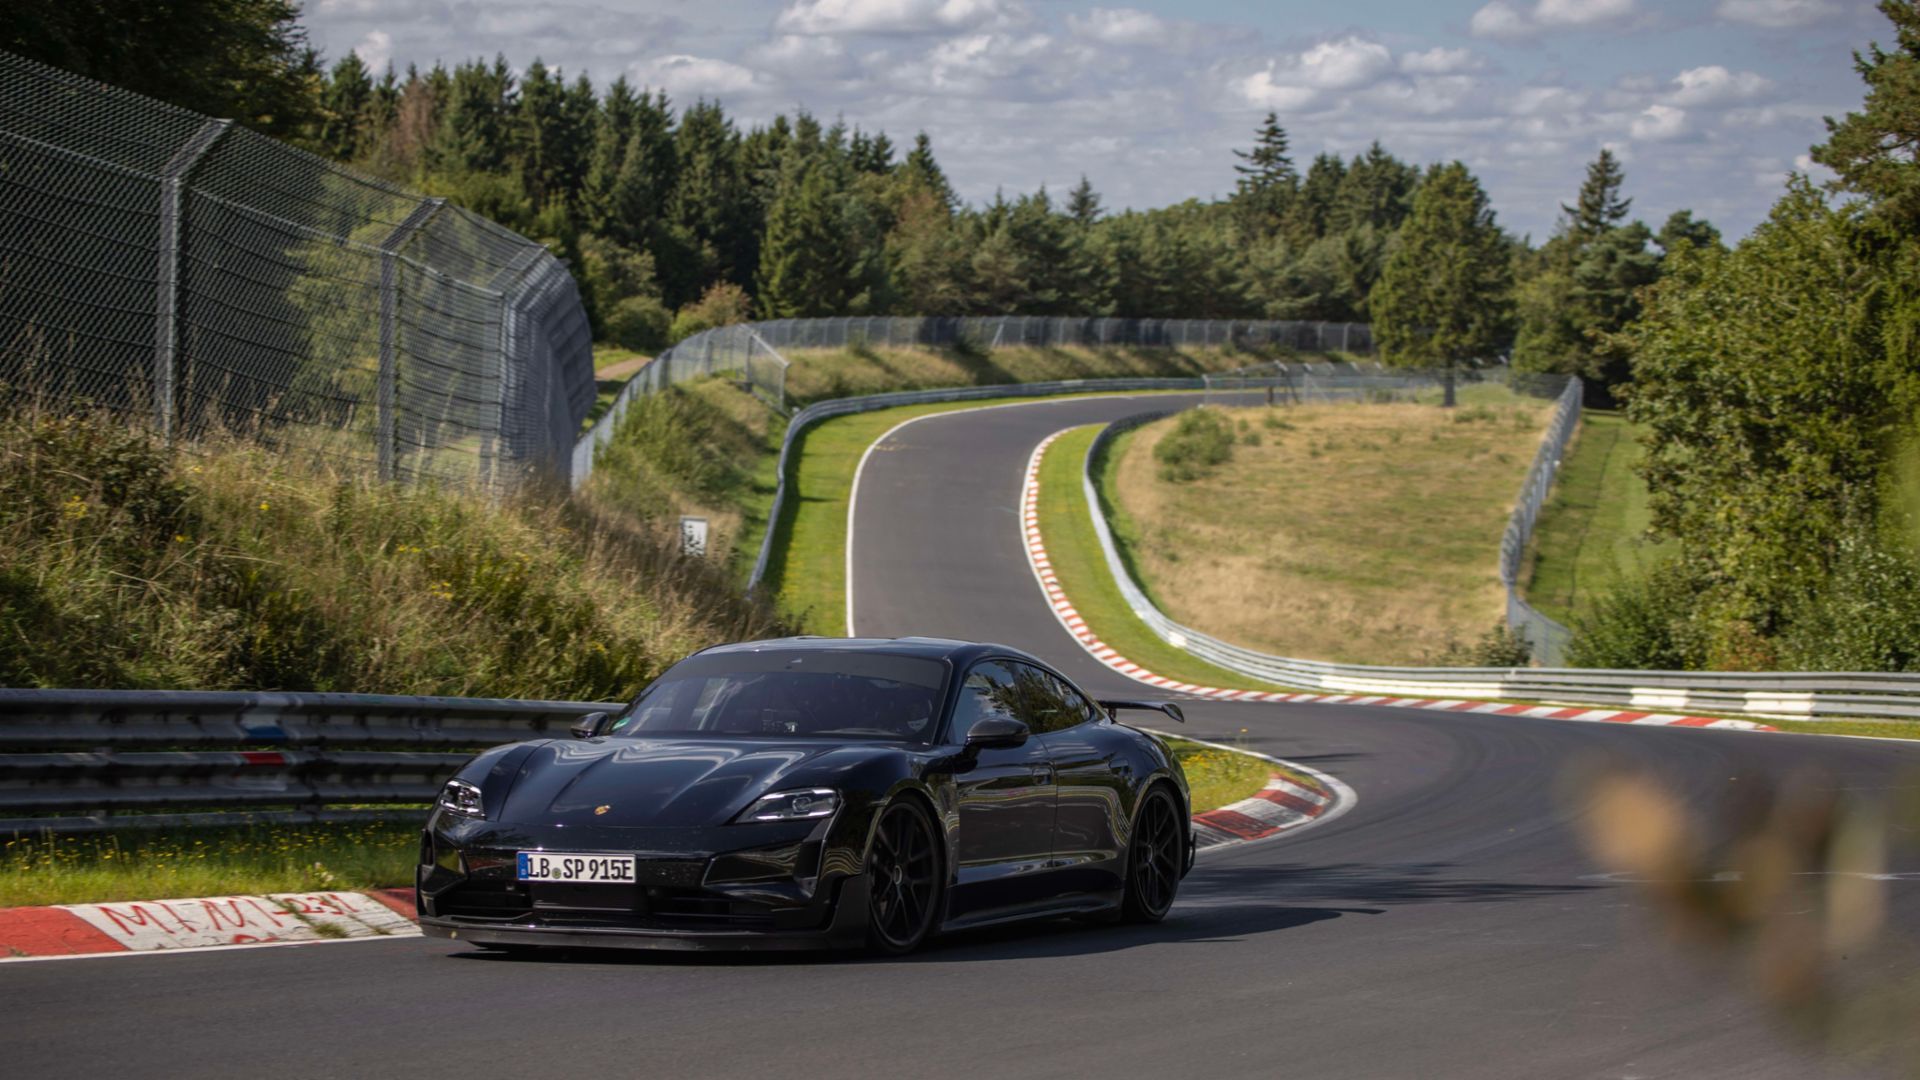 18 secondi più veloce della Tesla Model S Plaid: Porsche ha testato l'auto sportiva elettrica Taycan Turbo GT al Nürburgring